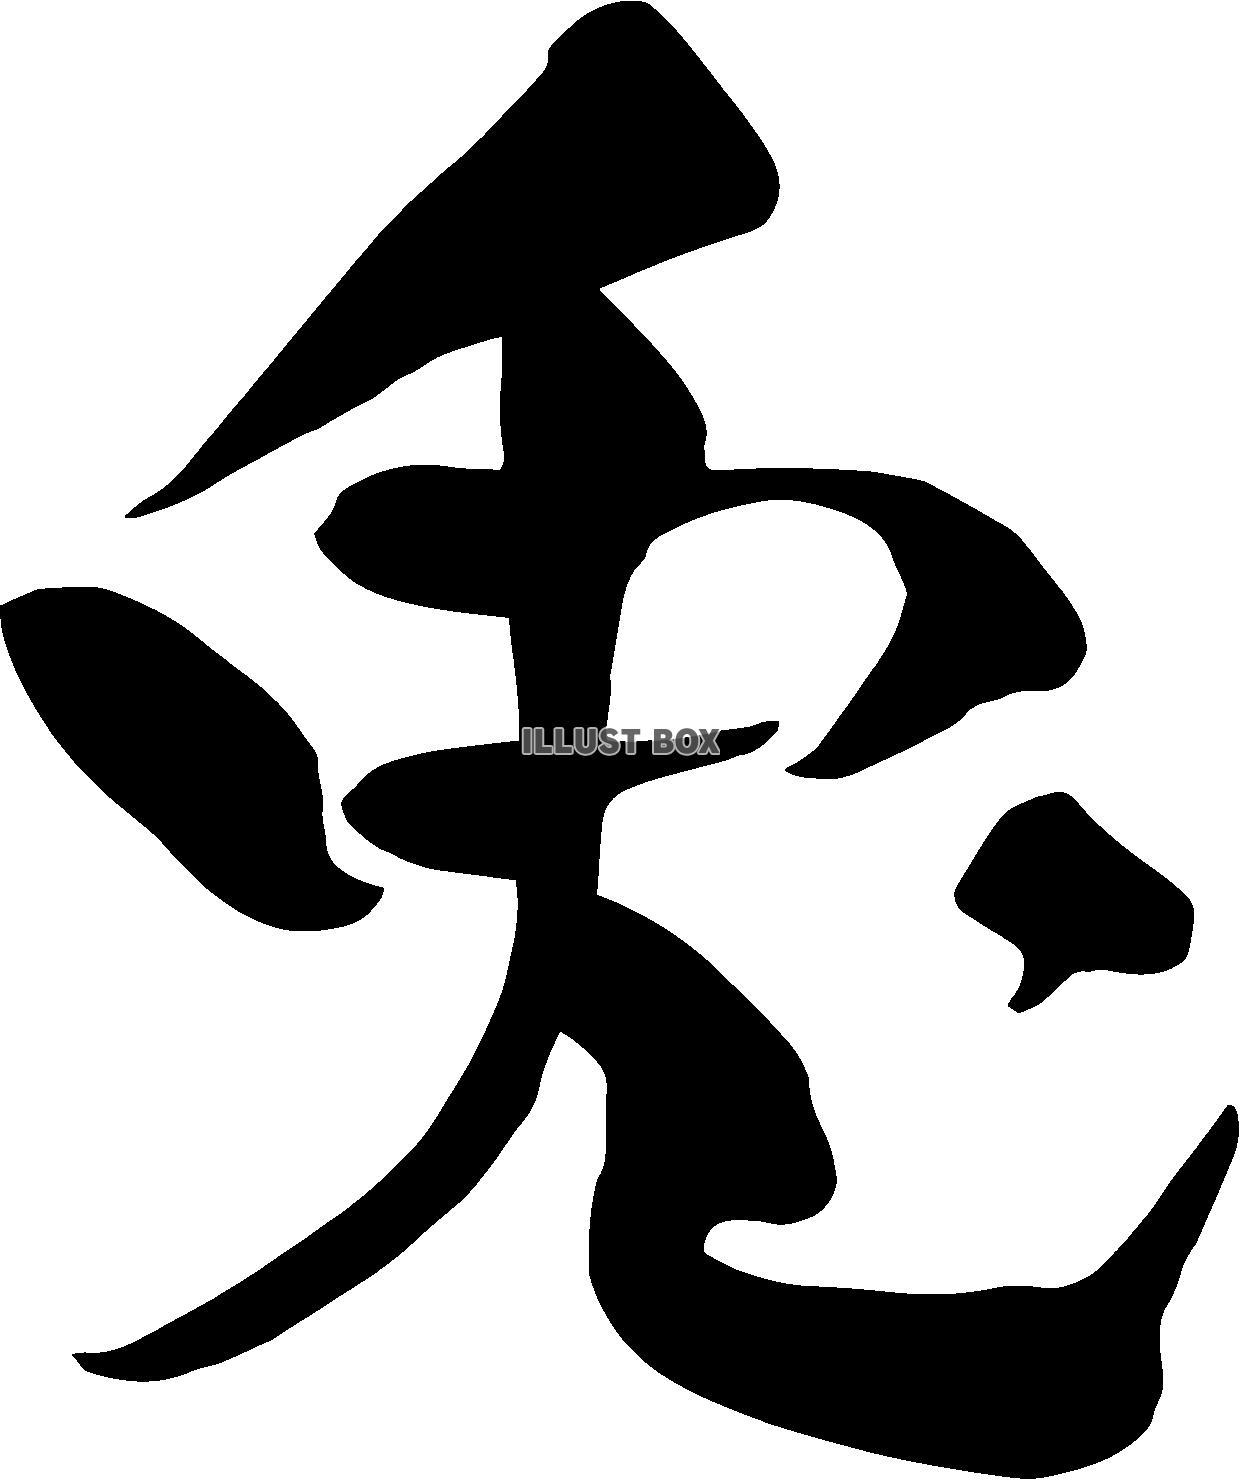 兎年の筆文字ロゴ